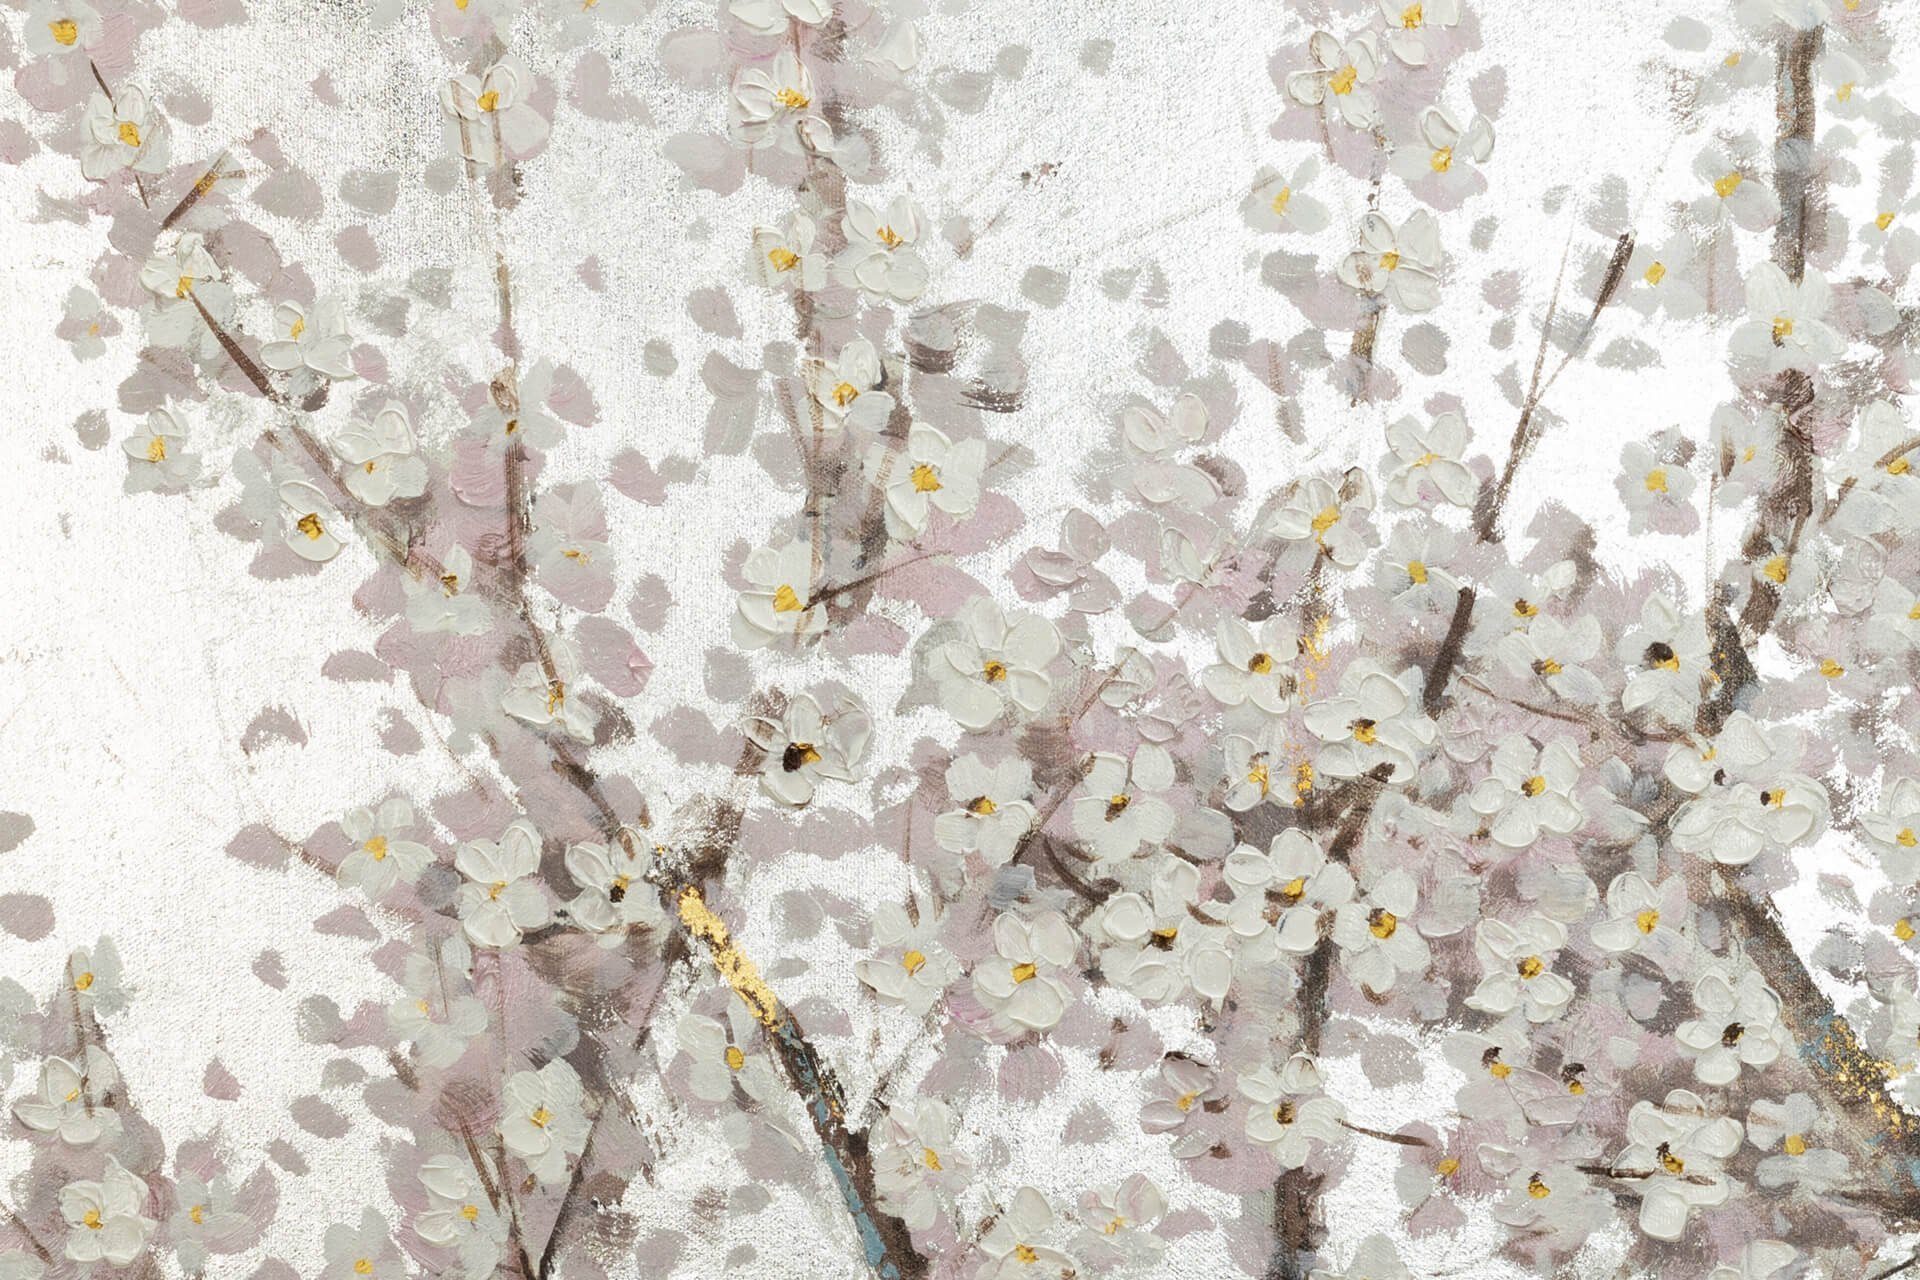 Gemälde Bloom in Wandbild HANDGEMALT KUNSTLOFT Wohnzimmer 120x60 Leinwandbild Pearls 100% cm,